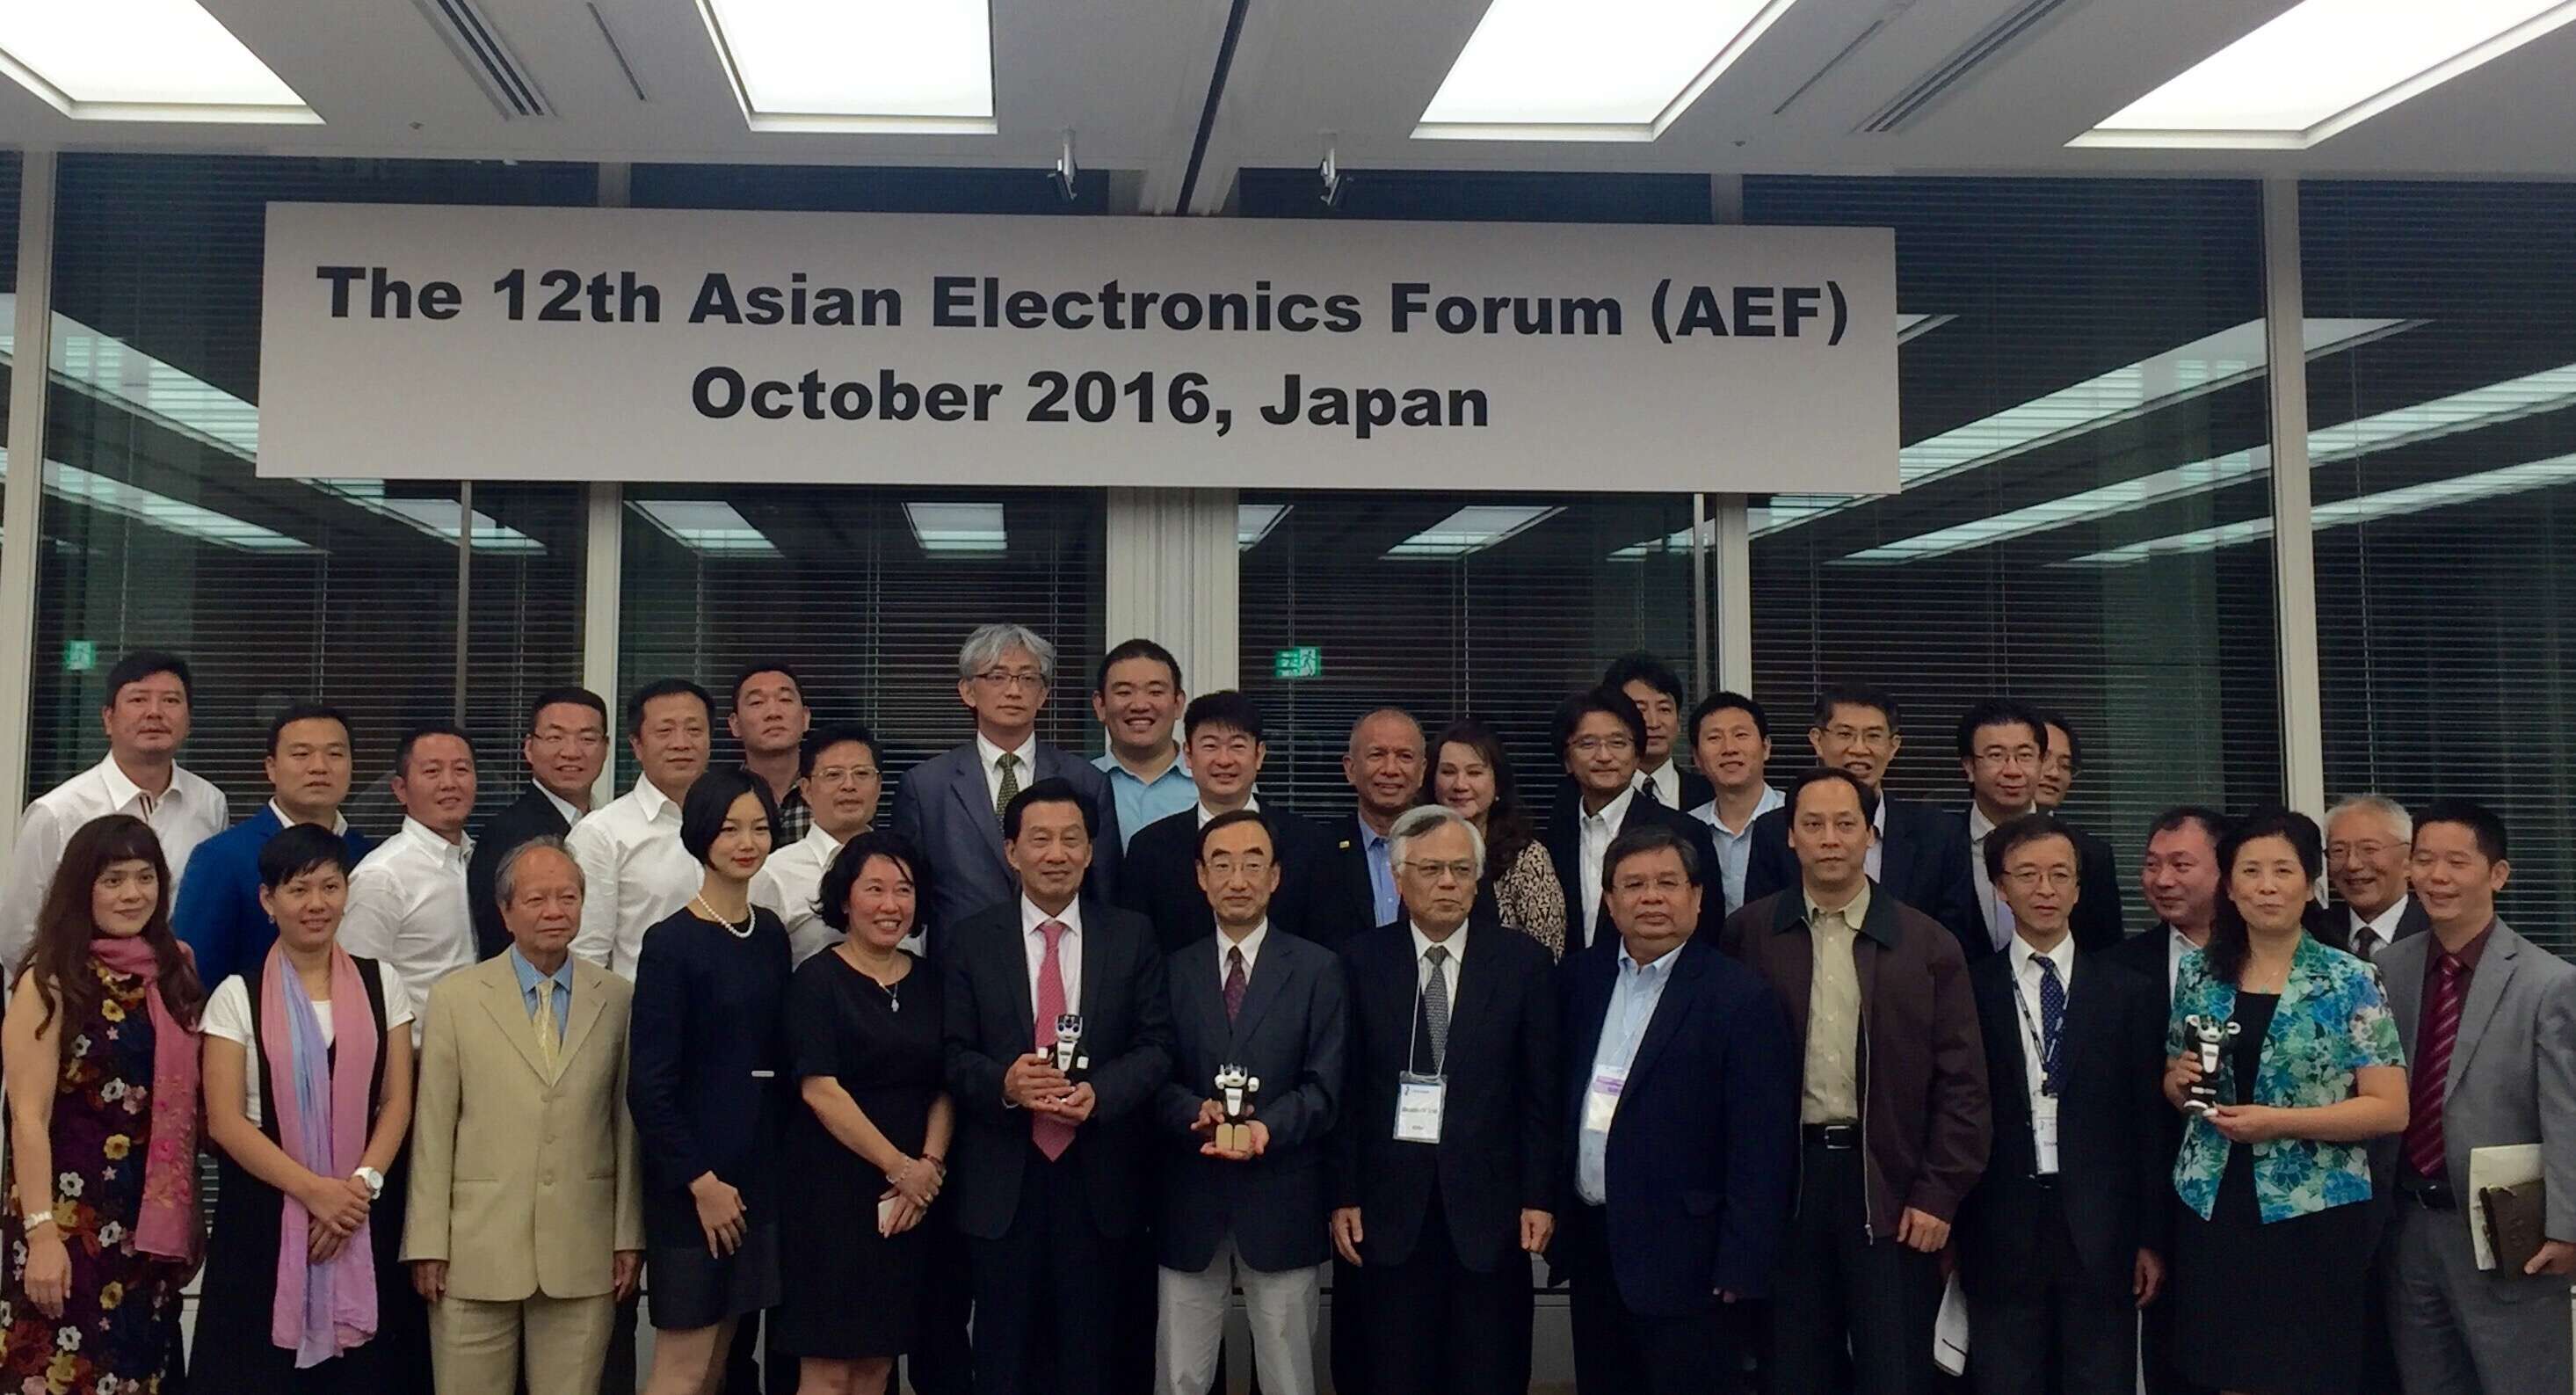 第十二届亚洲电子论坛(AEF)在日本东京隆重举行